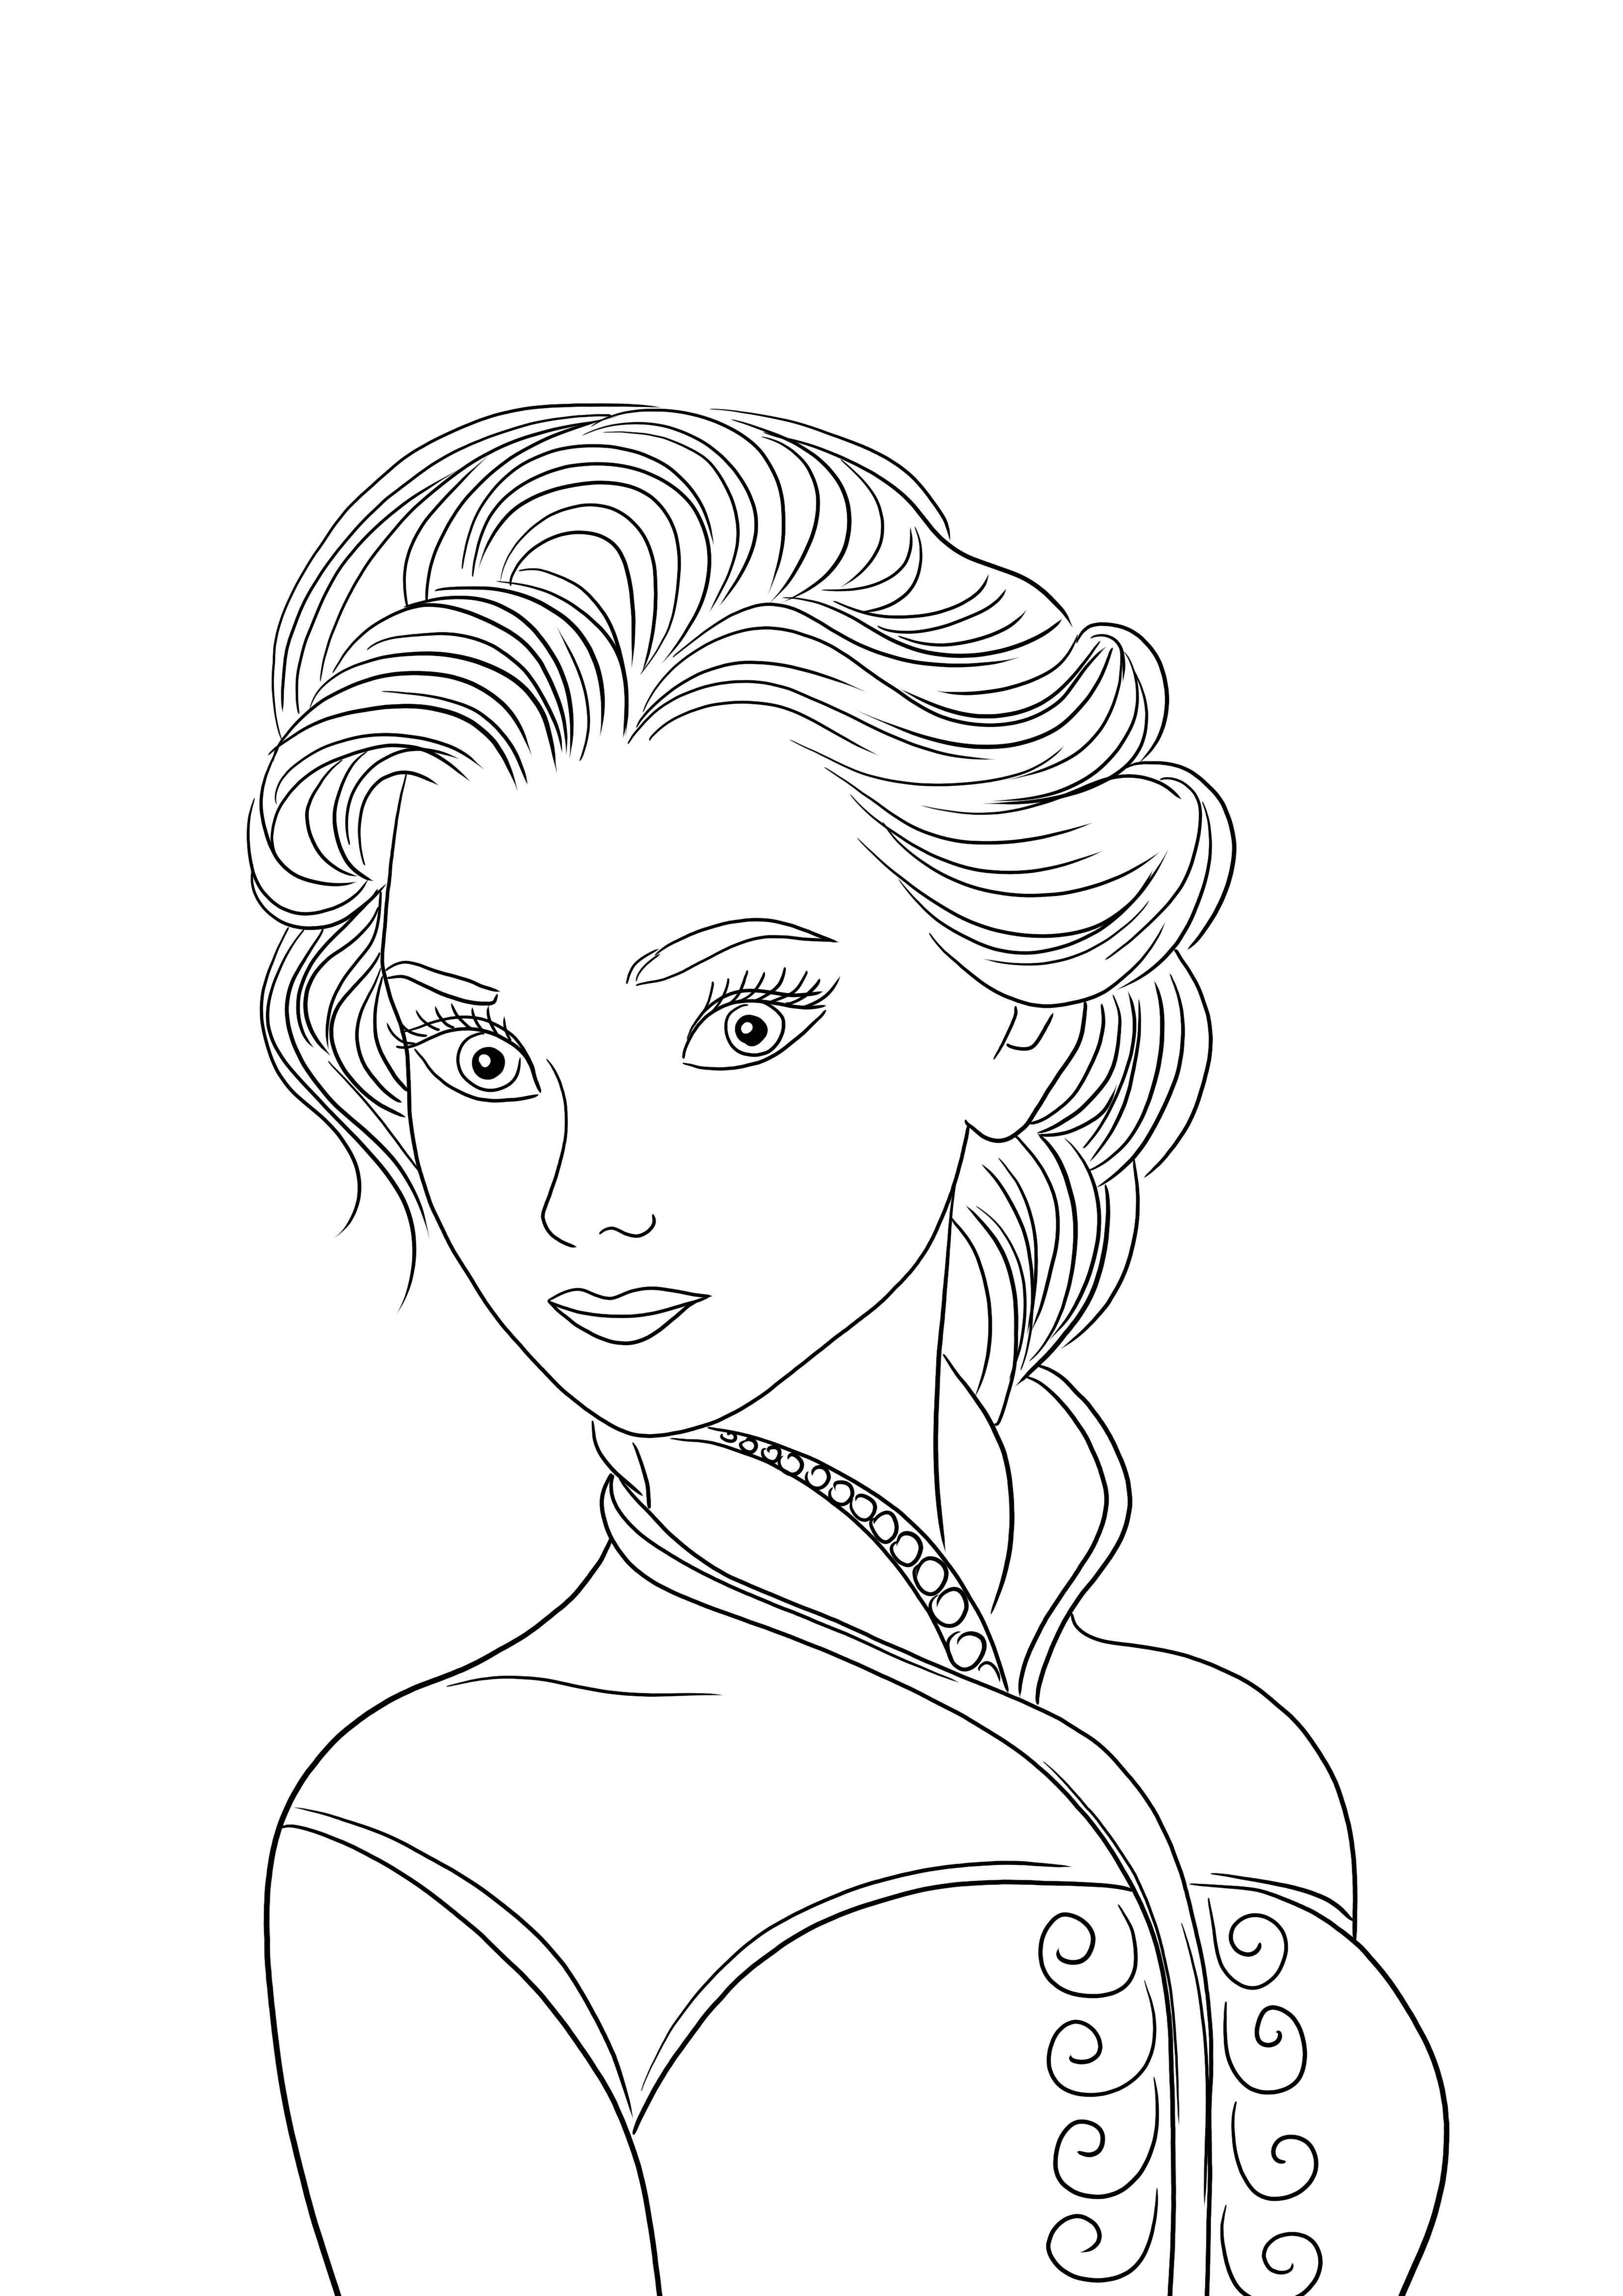 Elsa la reine prête pour l'impression gratuite et l'image à colorier pour les enfants